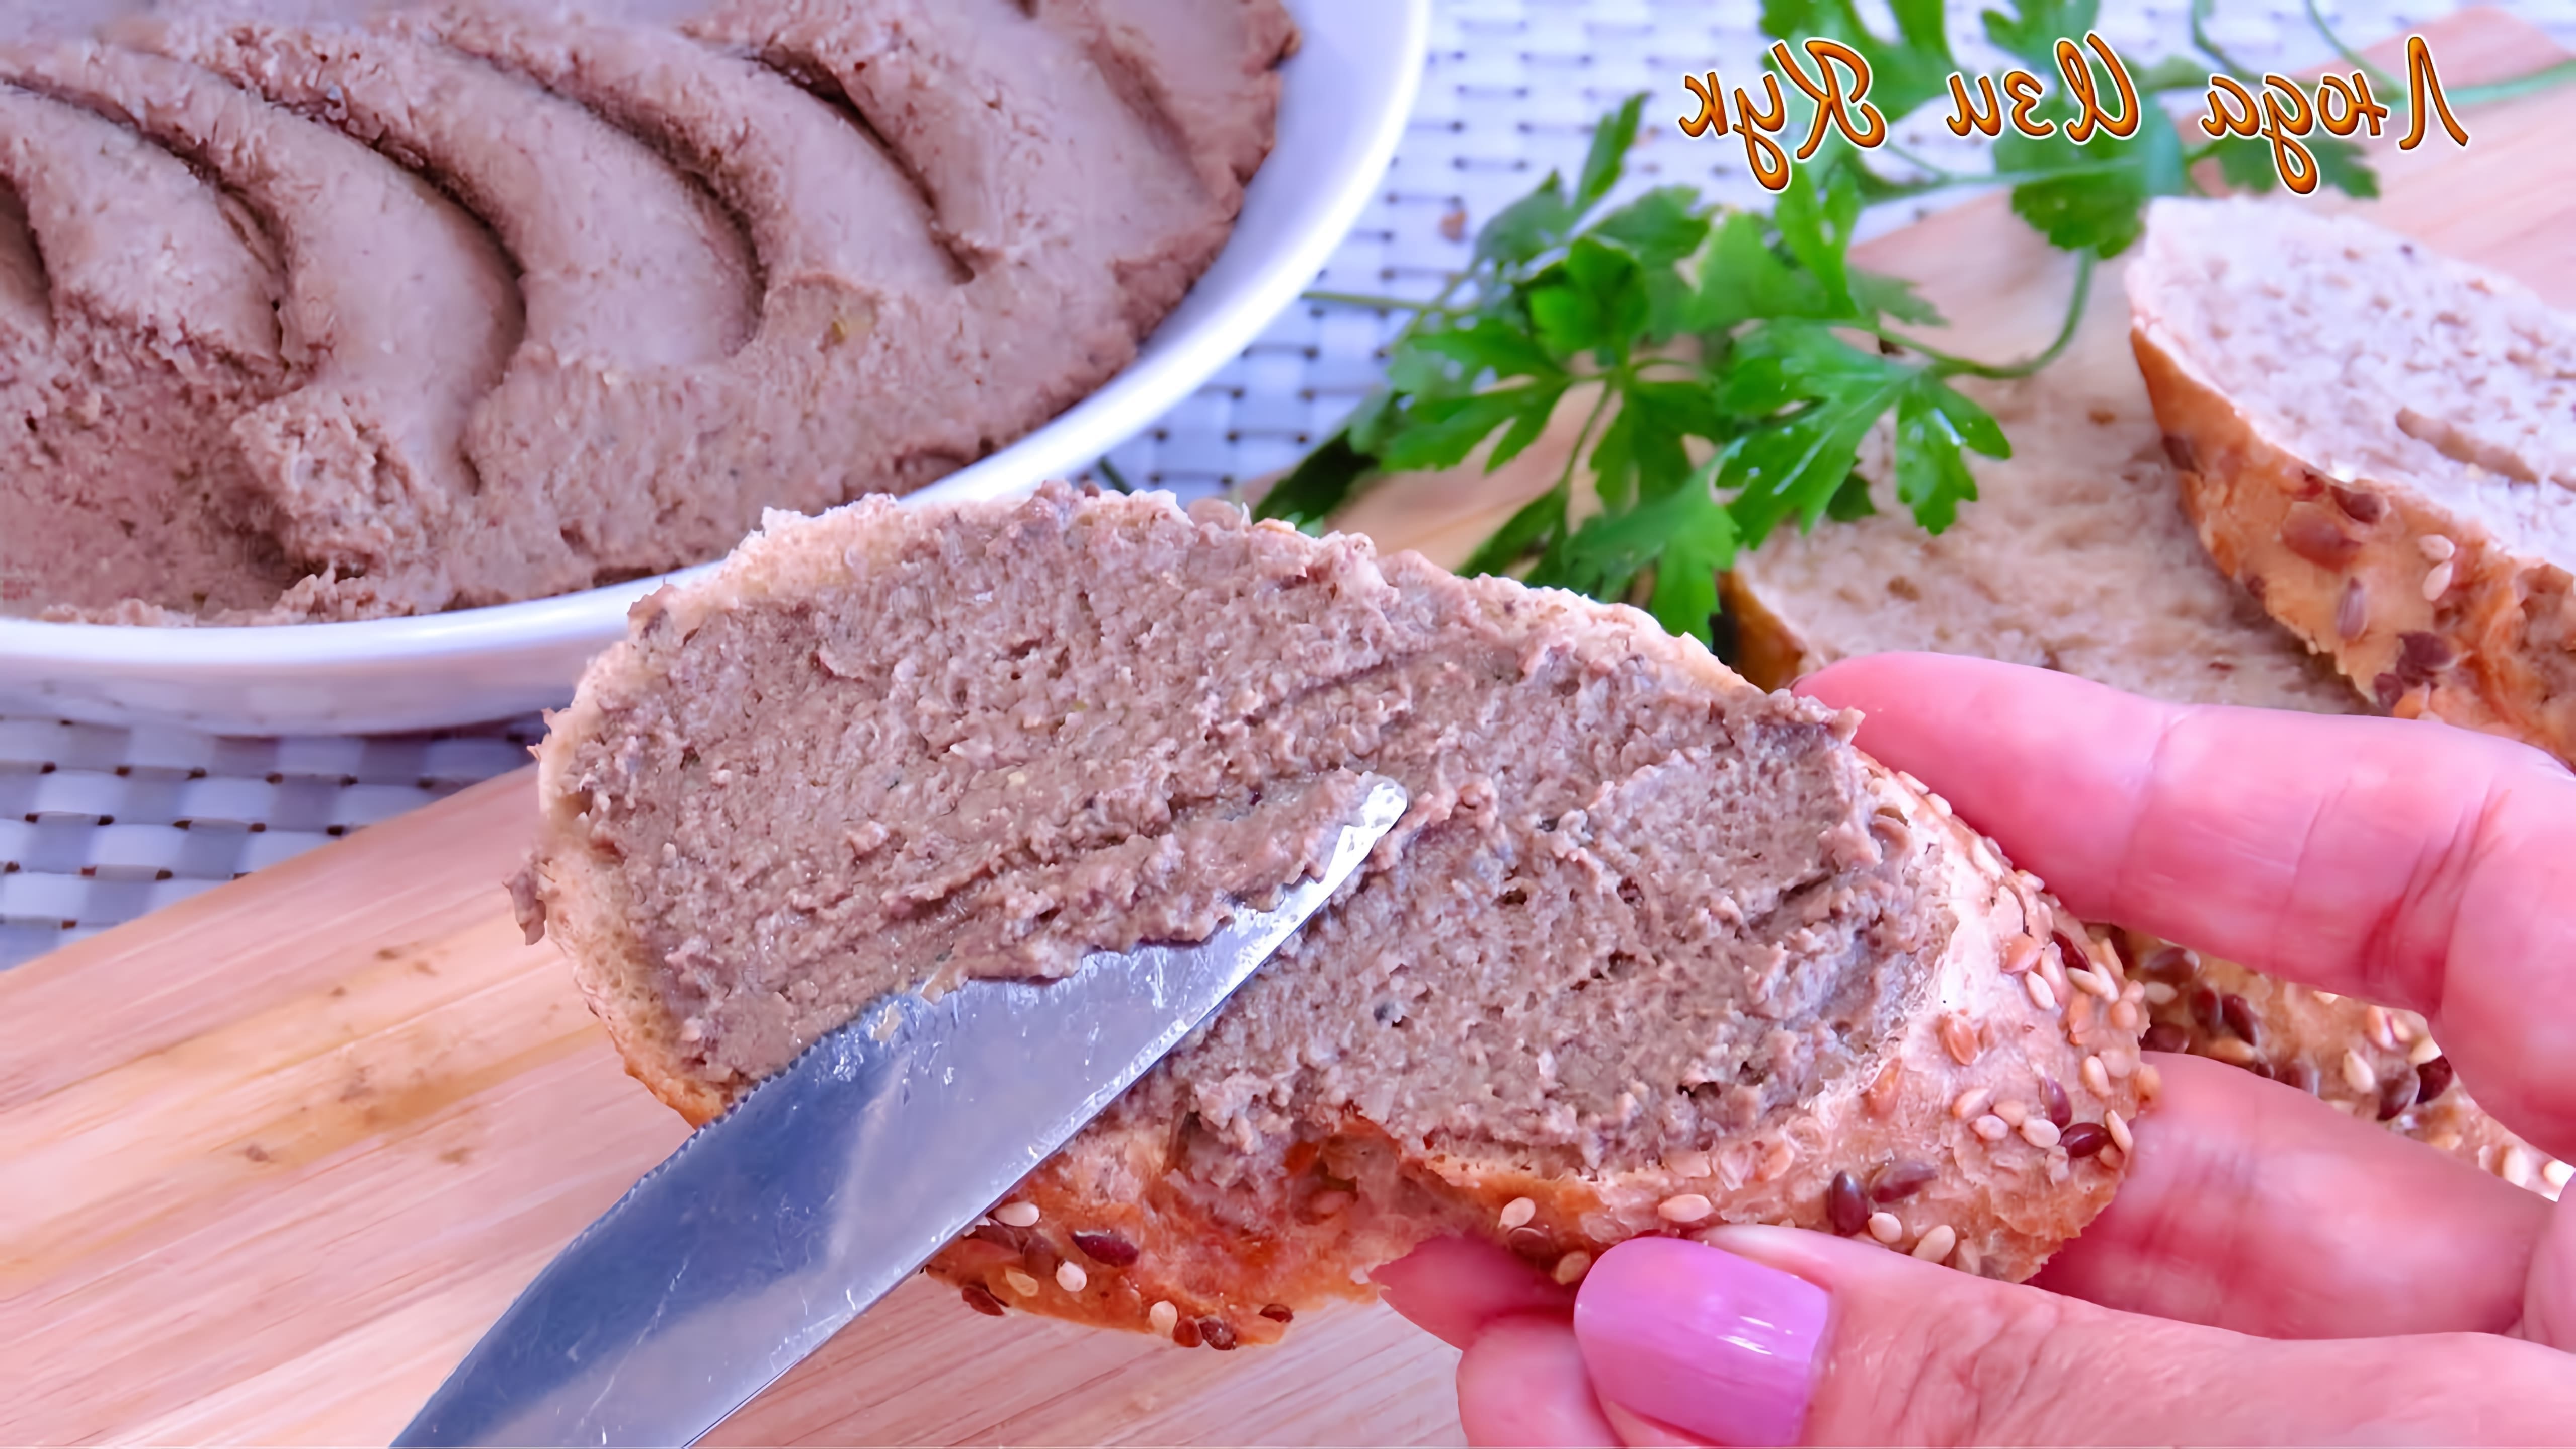 В этом видео Люда Изи Кук показывает простой рецепт мясного паштета, который может стать отличной заменой колбасе